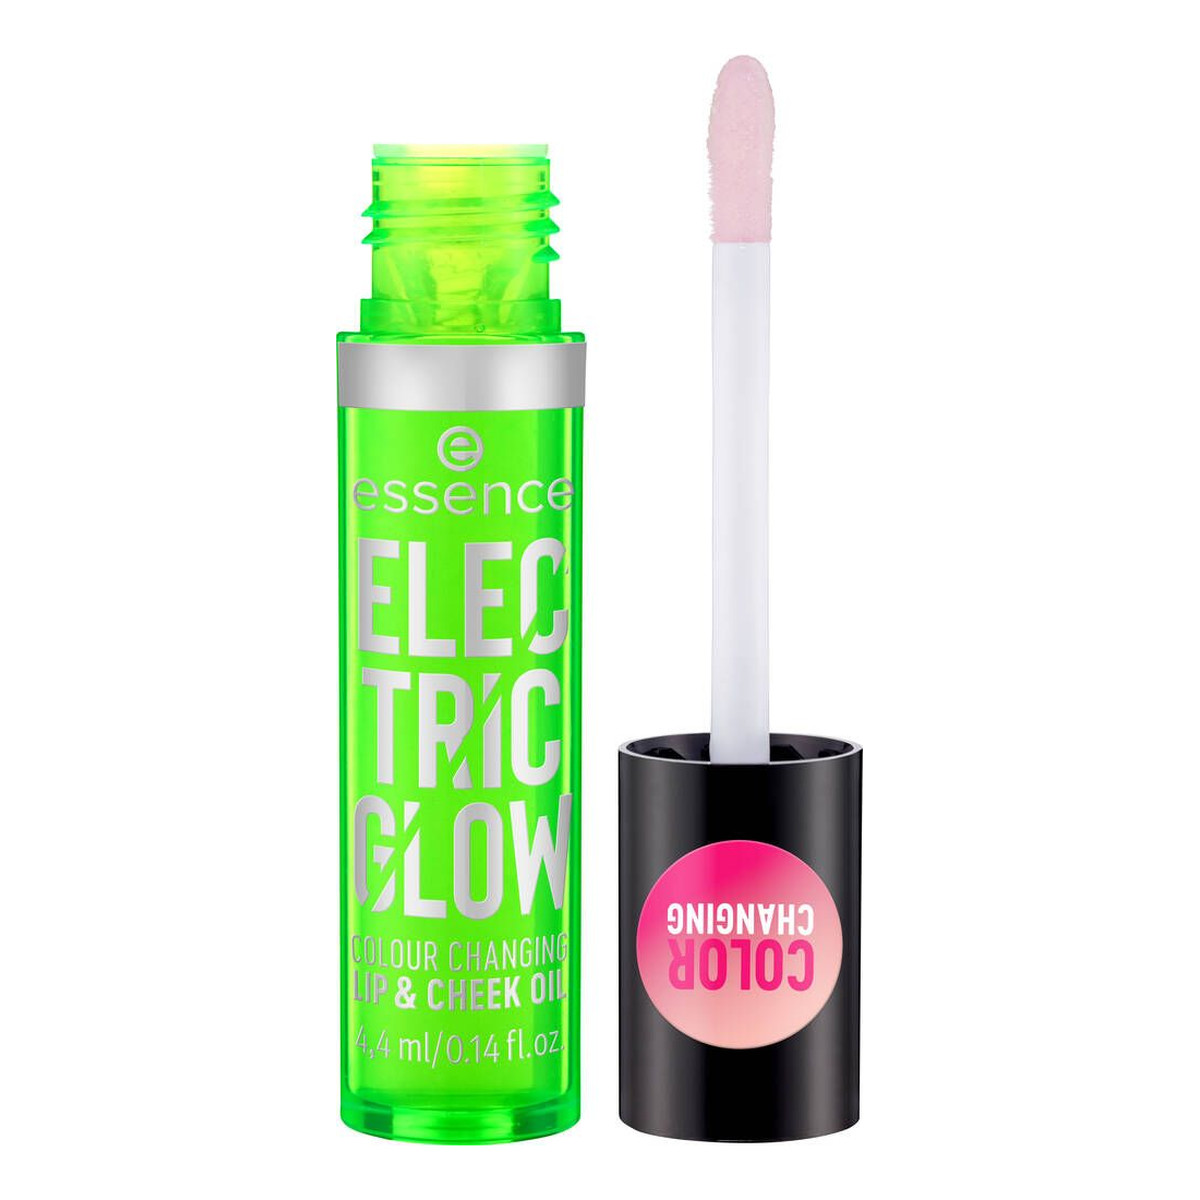 Essence Electric Glow Colour Changing Lip & Cheek Oil Olejek barwiący do ust i policzków 4ml